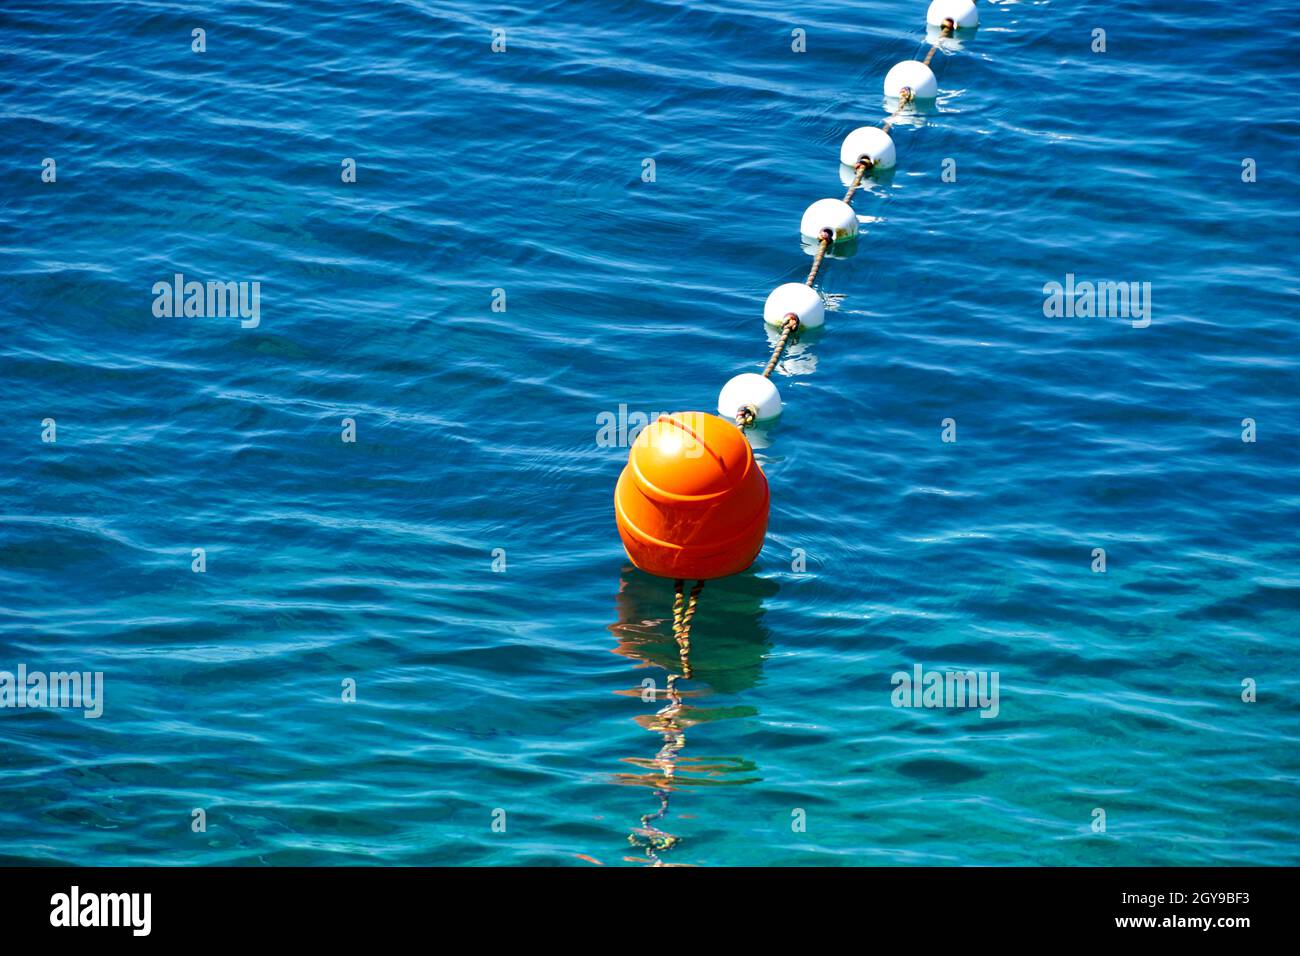 Bouée flottante en plastique rouge sur la surface bleue et turquoise de la mer Banque D'Images